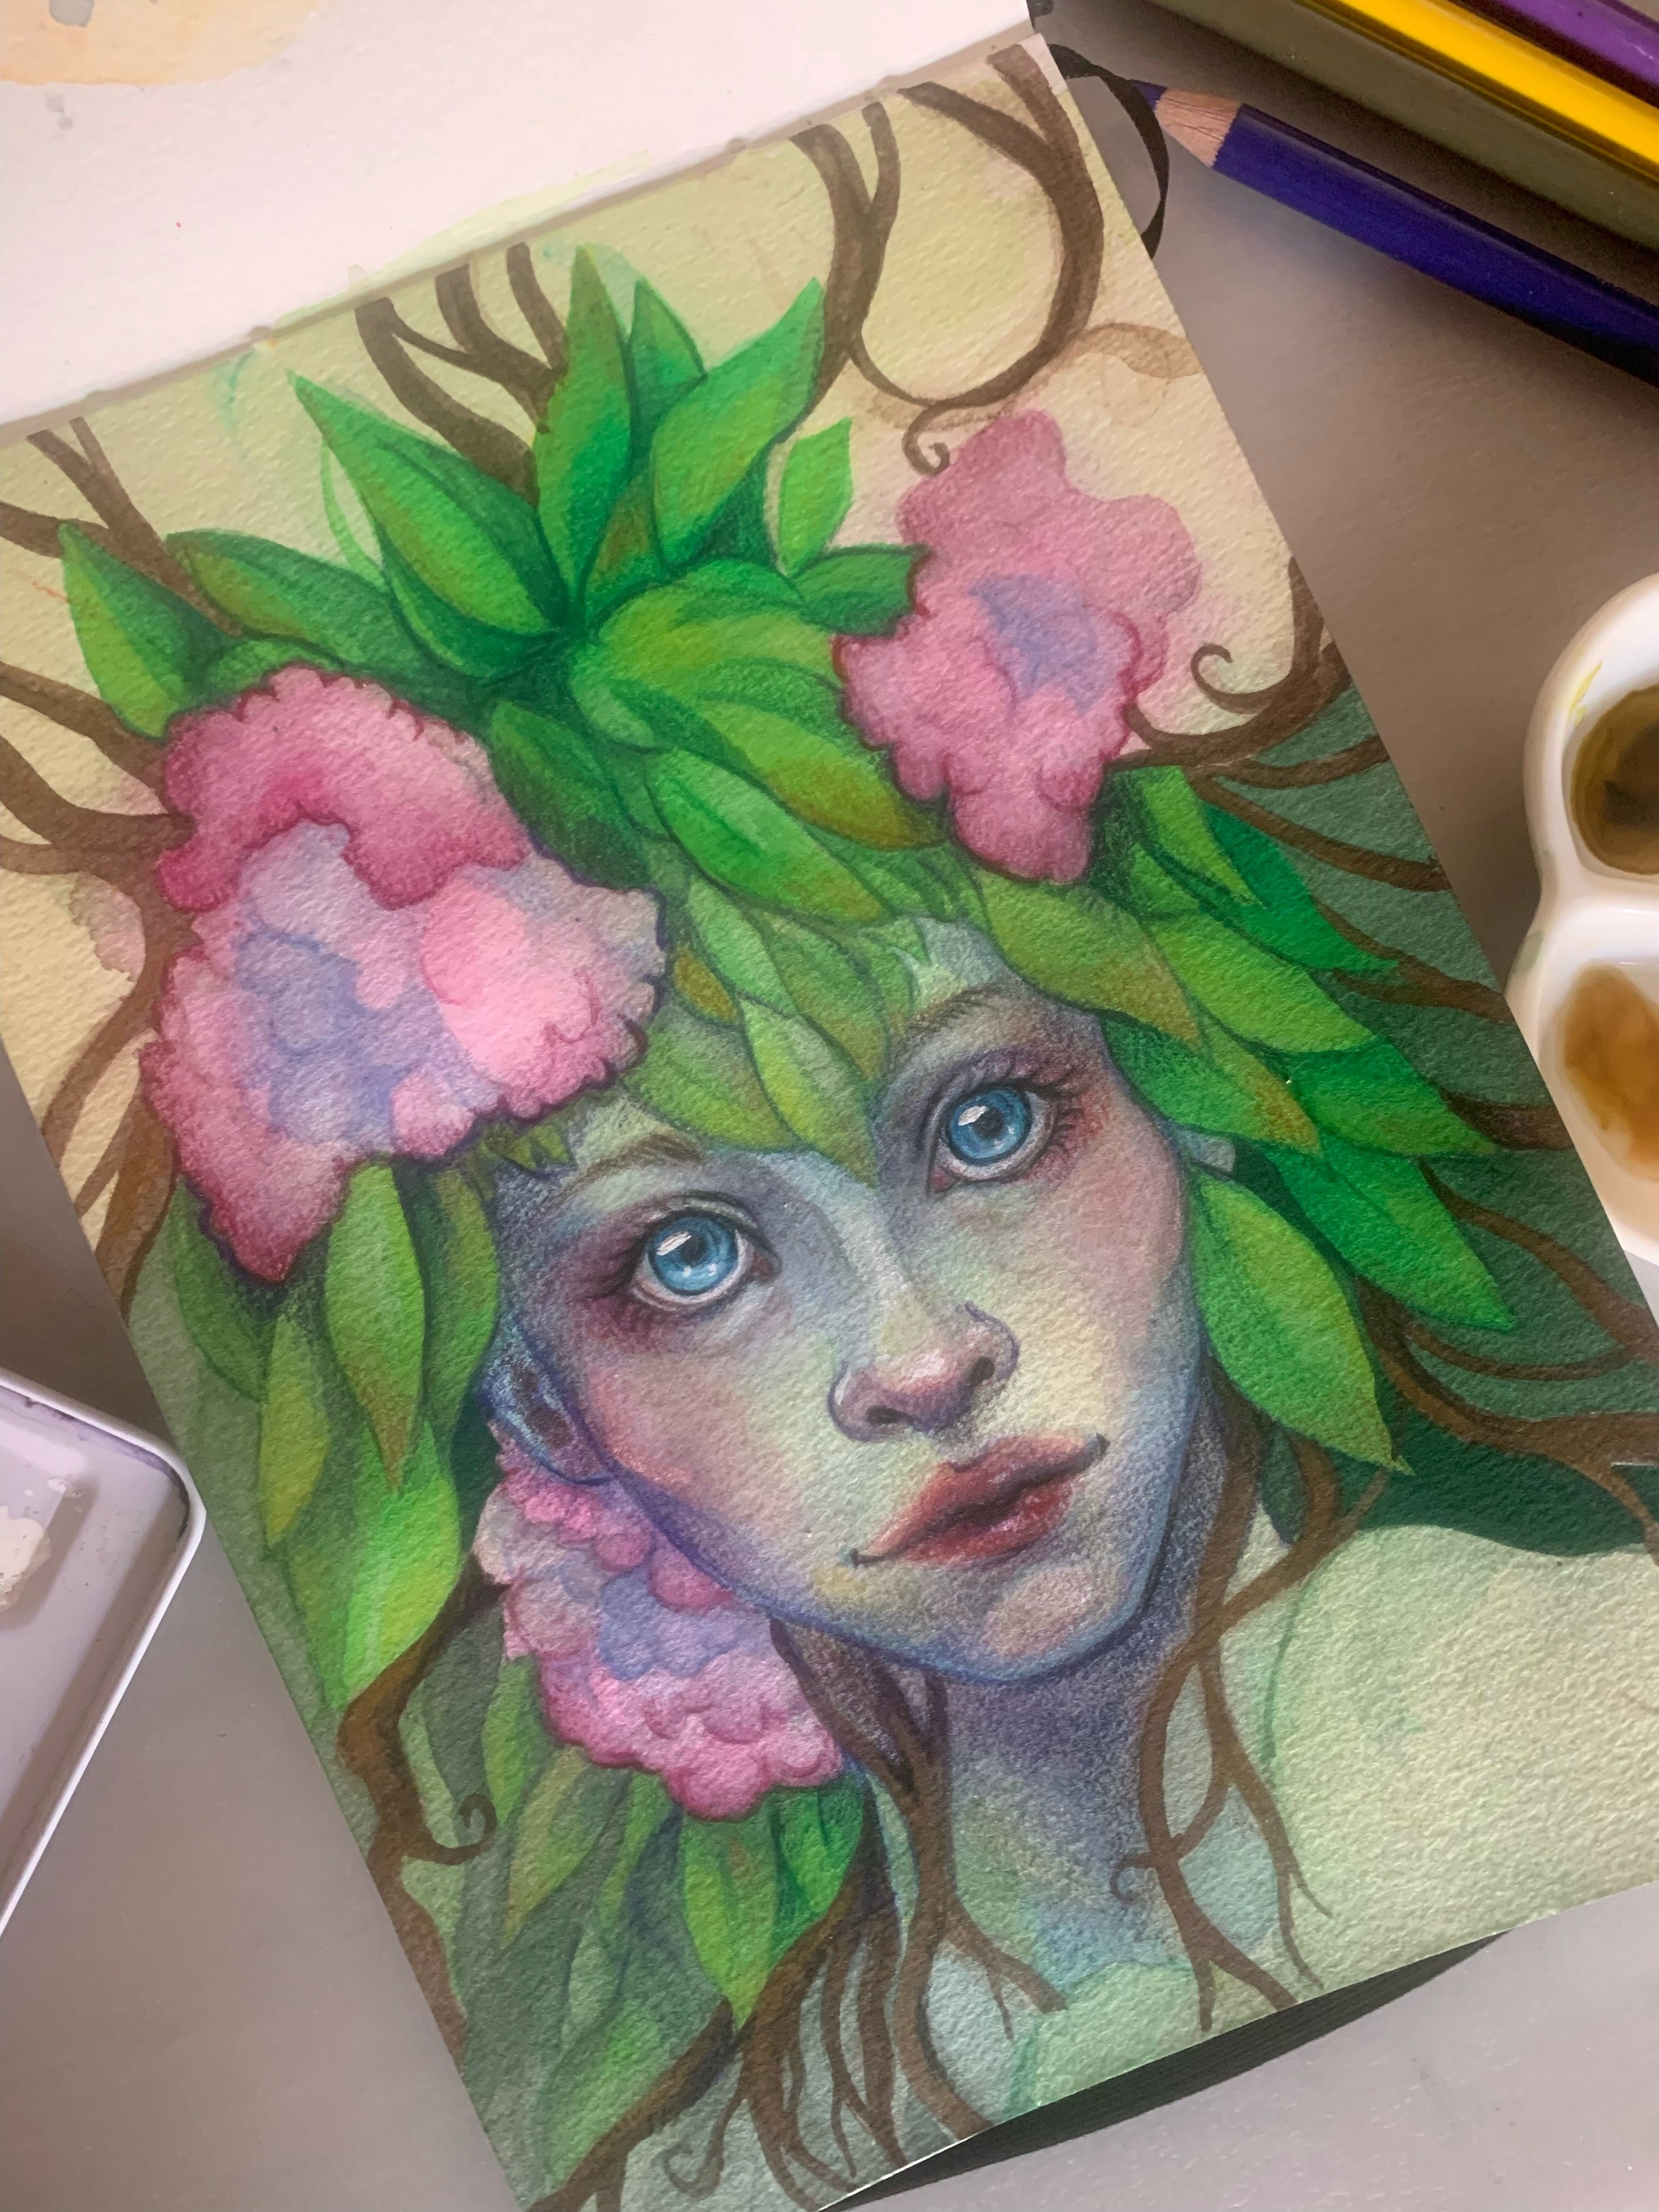 Portrait d'une femme avec une chevelure de feuilles et de fleurs. Ses yeux sont bleus. Autour, on retrouve du matériel de dessin (des pots de peintures, des crayons de couleurs et des pinceaux)